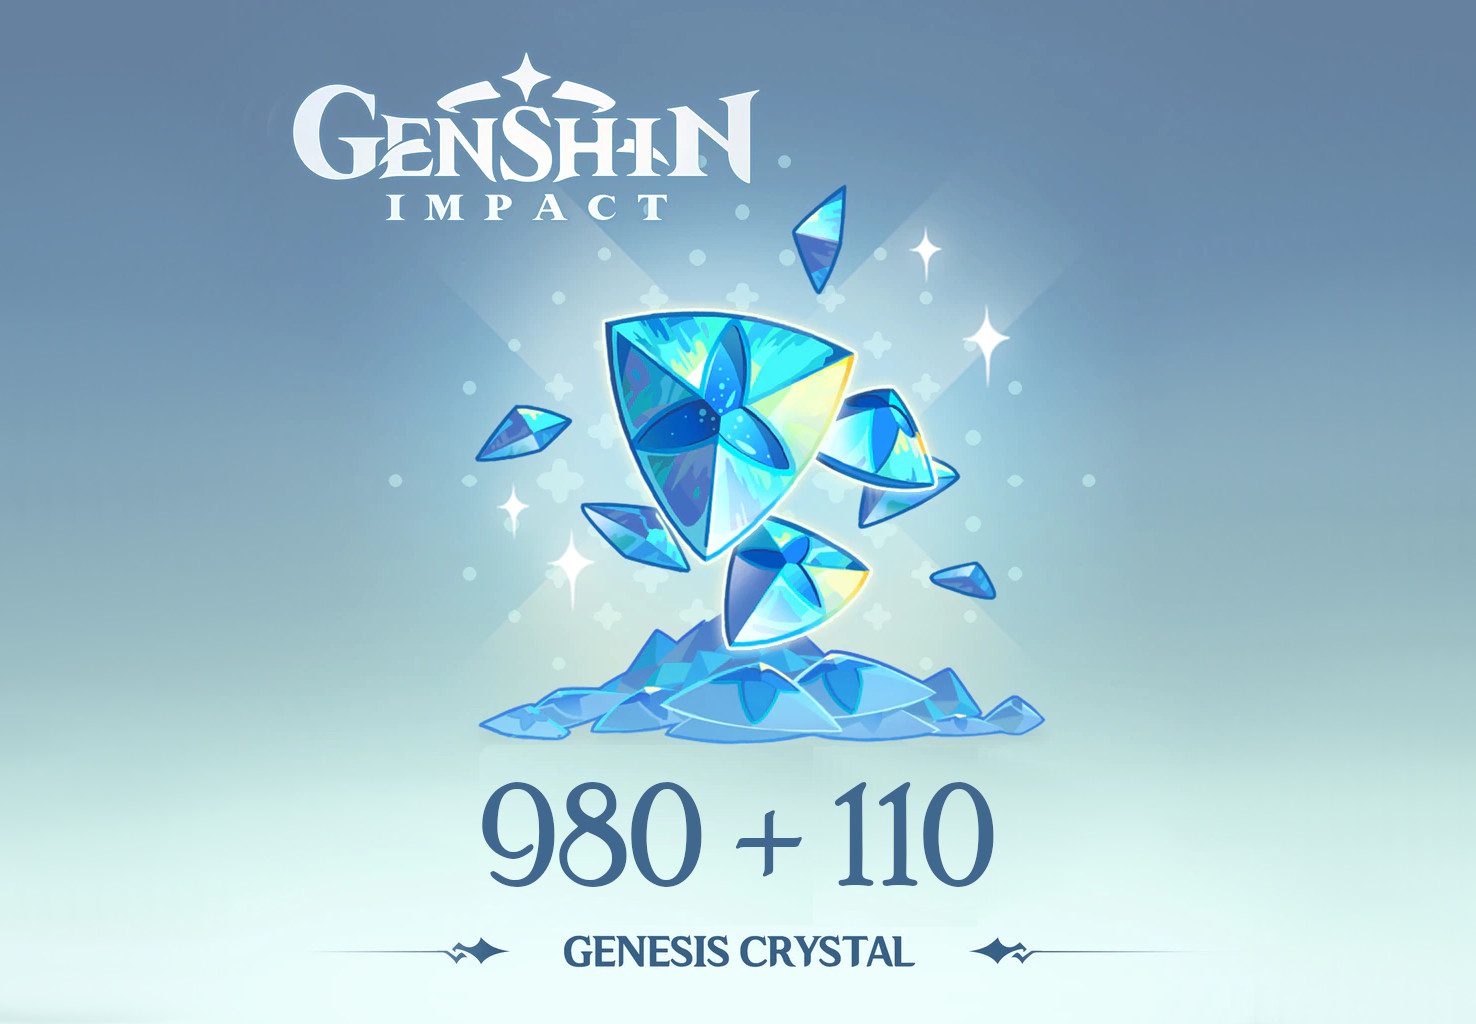 Genshin Impact - 980 + 110 Genesis Crystals Reidos Voucher USD 17.23